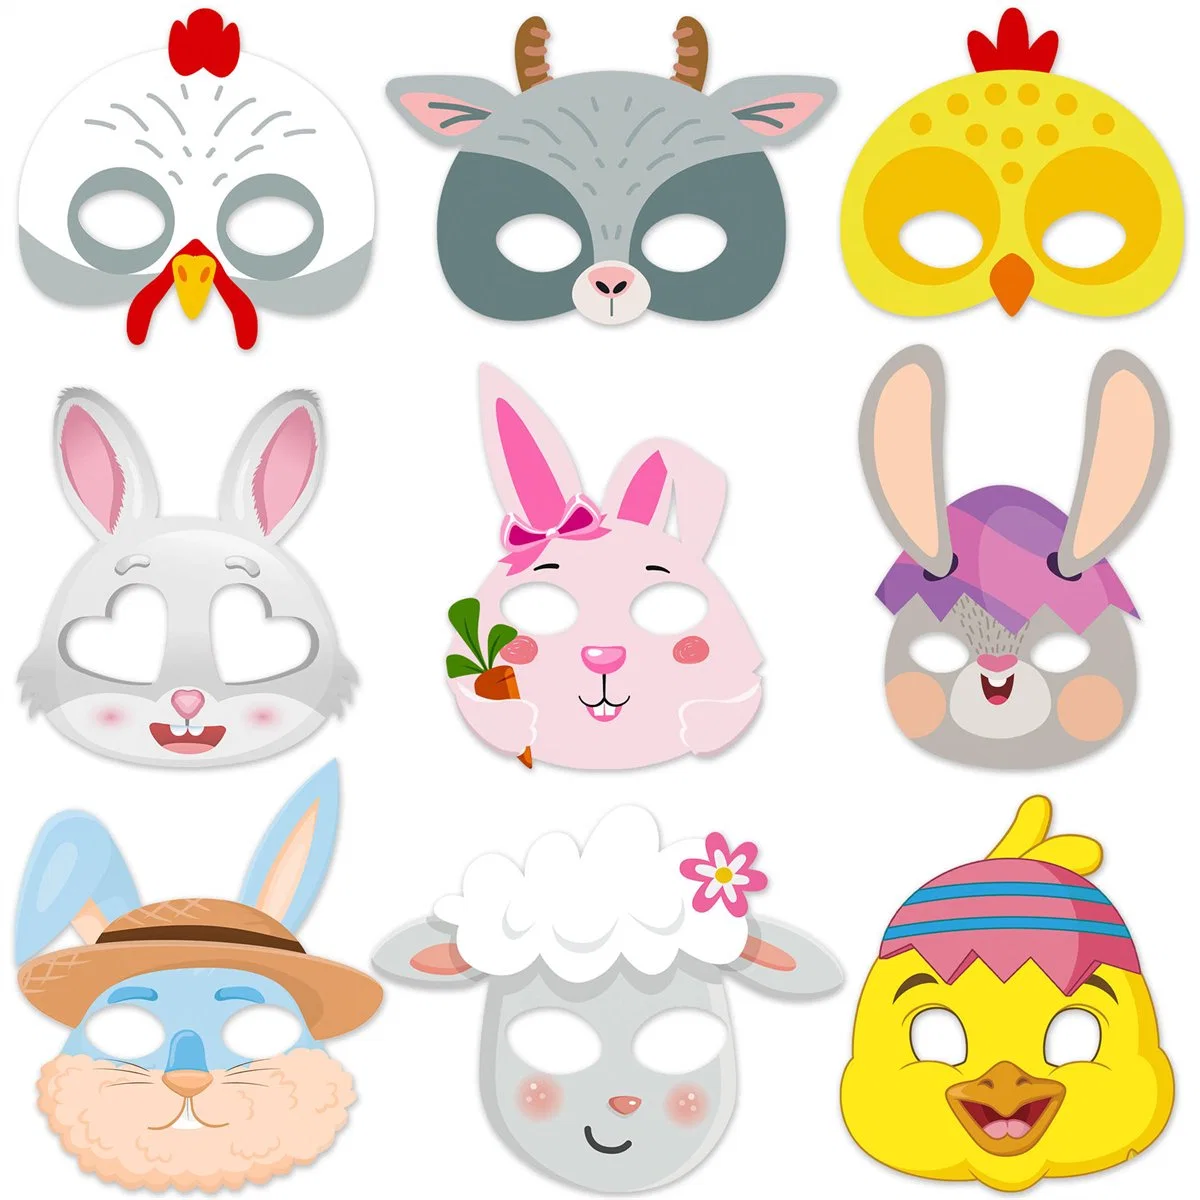 Papel de Pascua Máscaras patrón Animal niños adultos Fiesta de Pascua Decoración